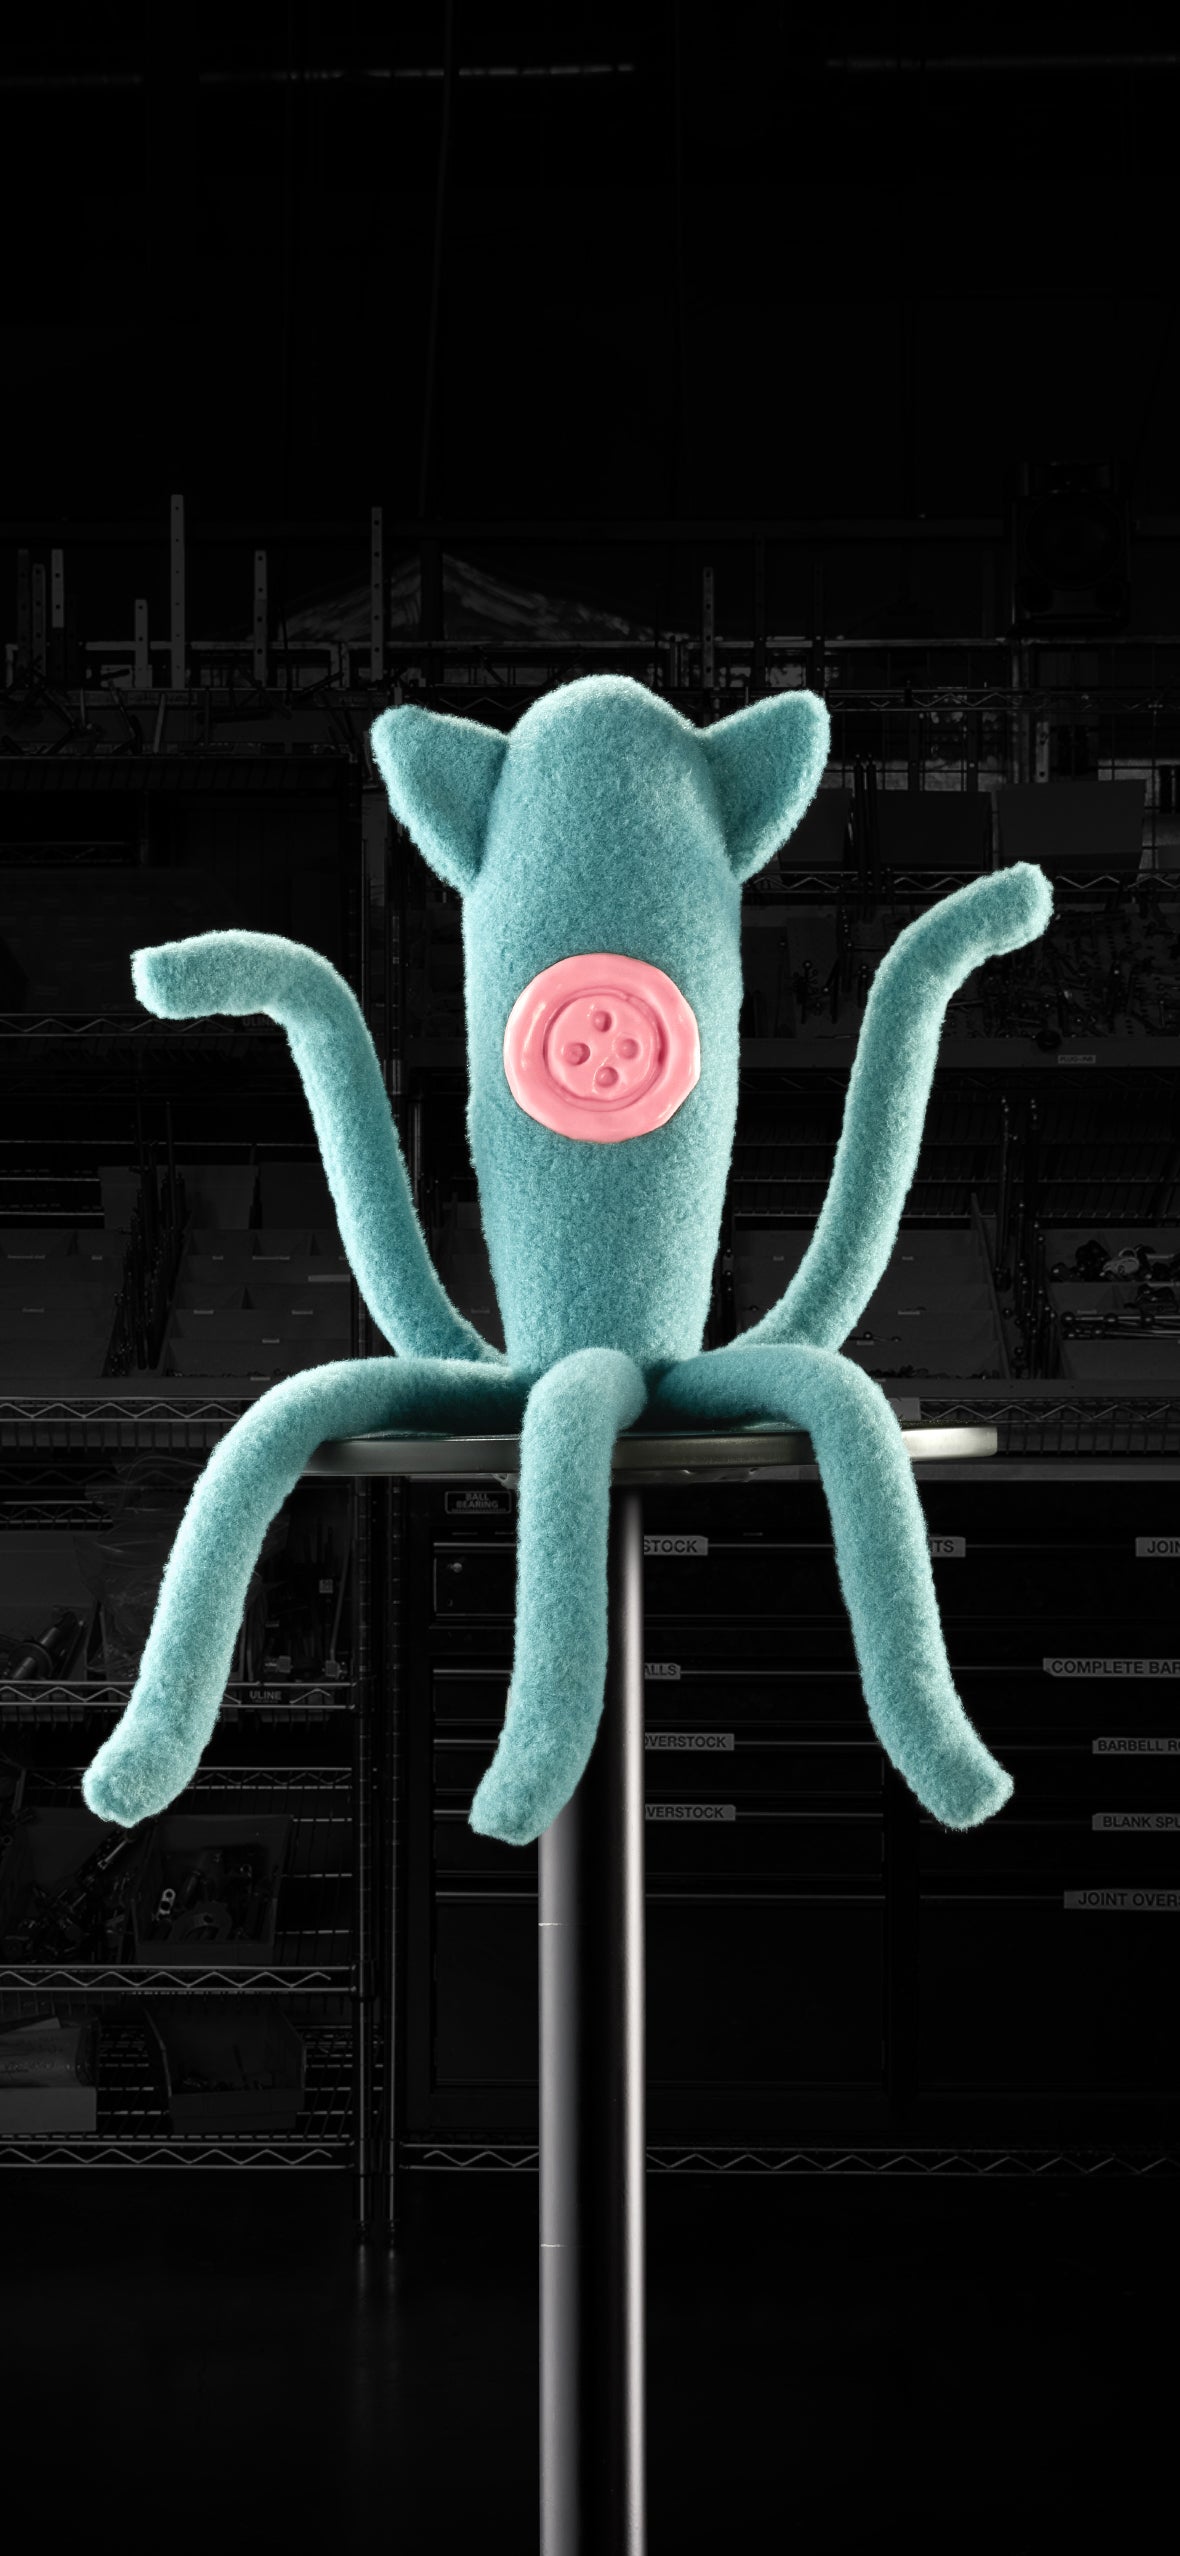 Coraline squid plush